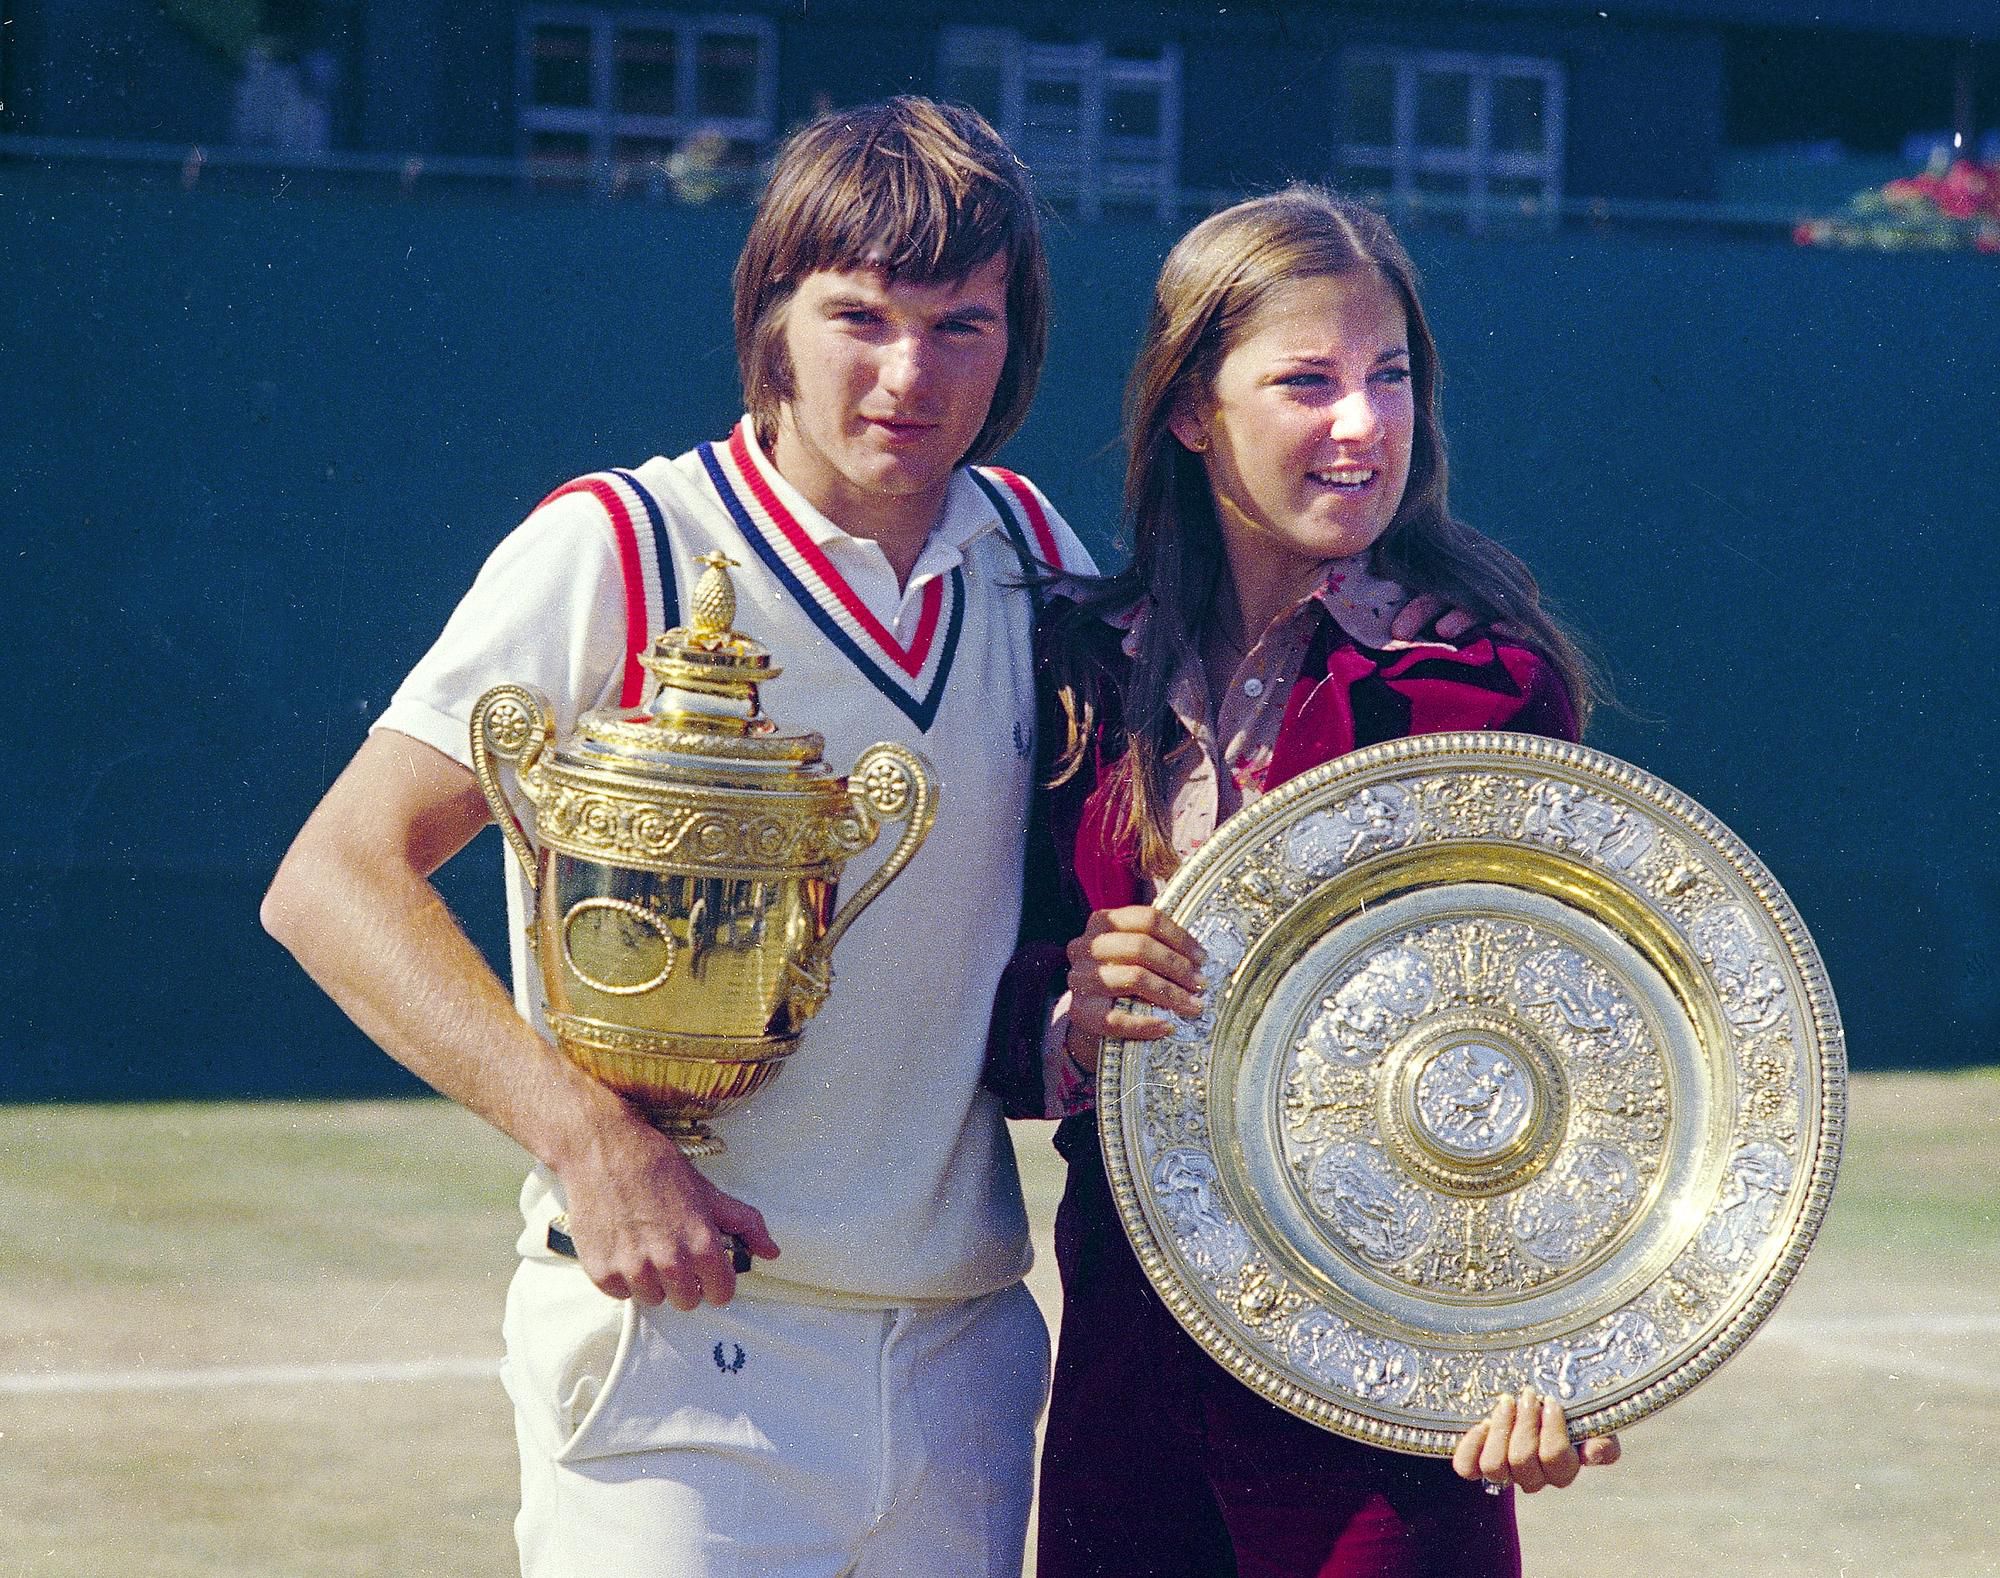 Chris Evertová a Jimmy Connors s trofejami za víťazstvo na WImbledone 1974